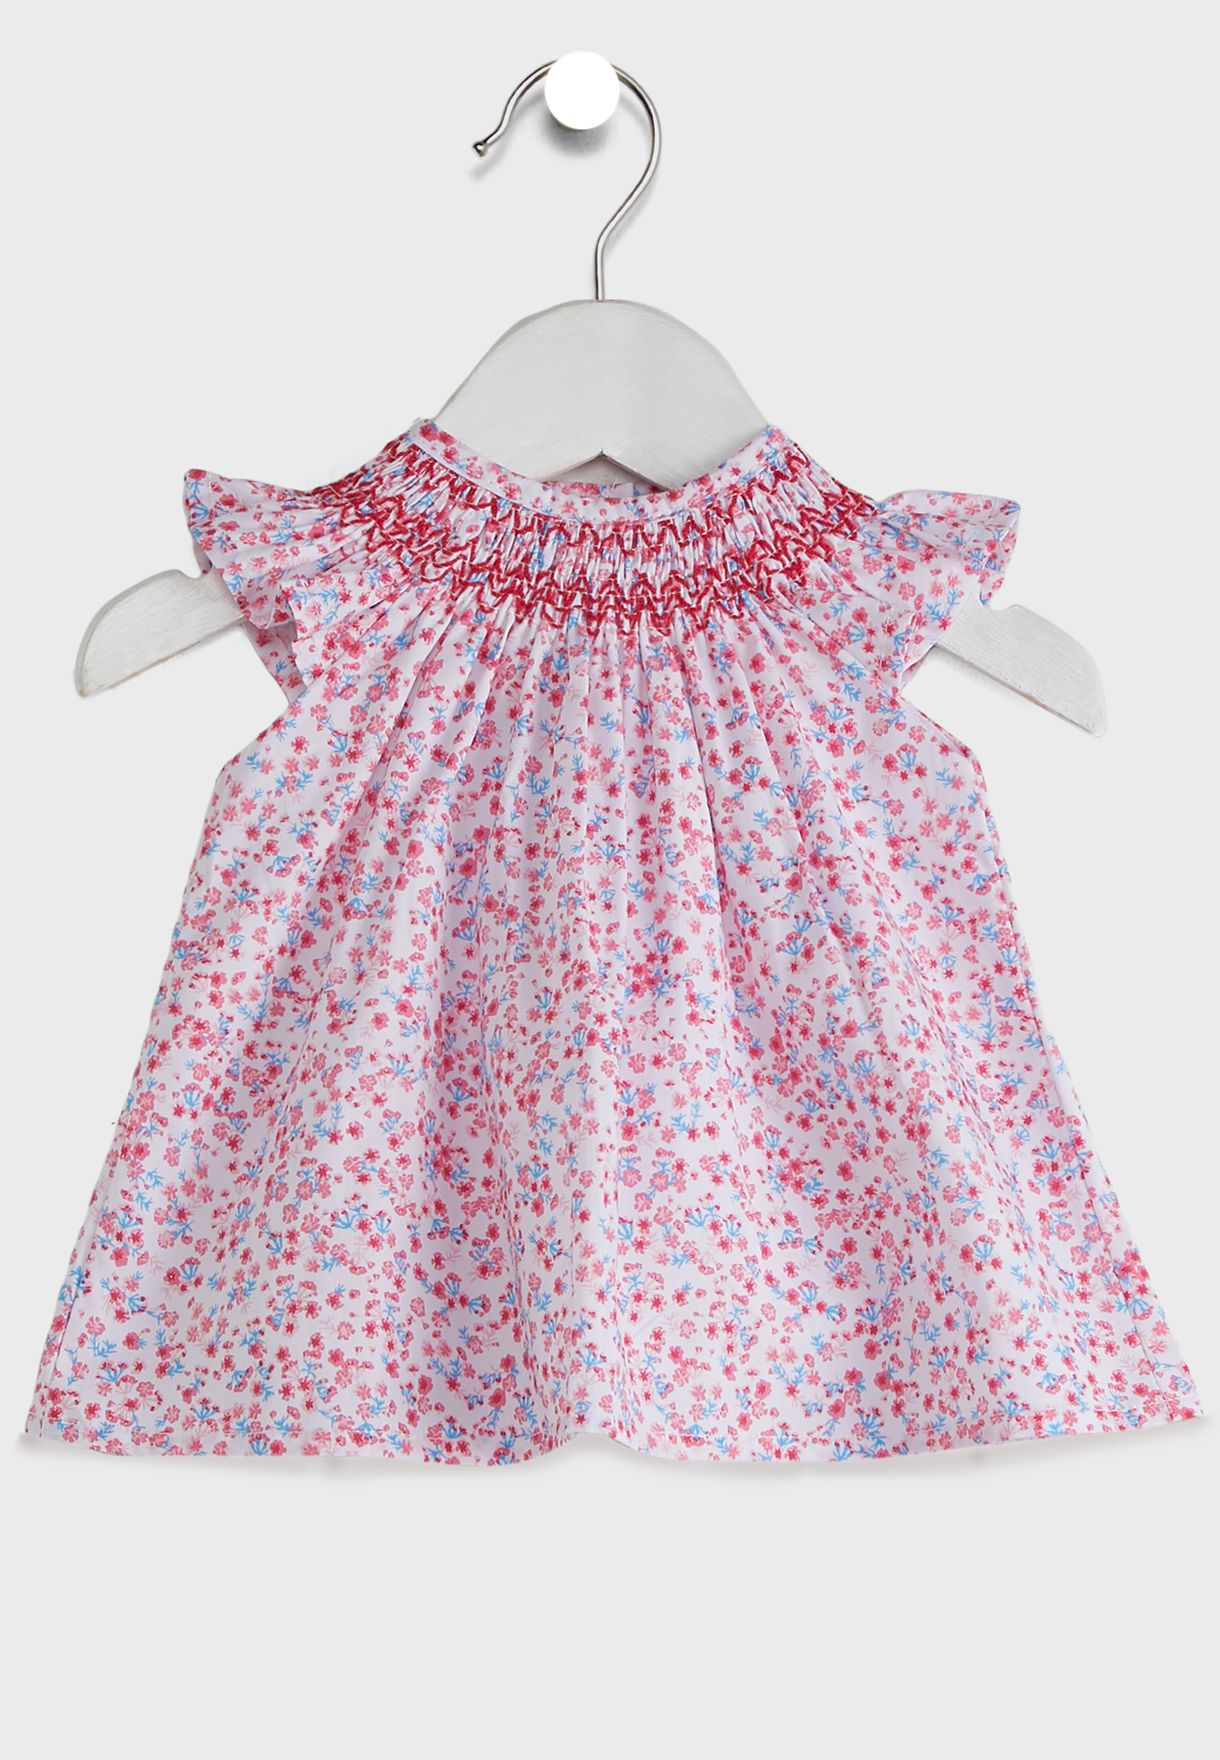 Infant Floral Dress + Knicker Set